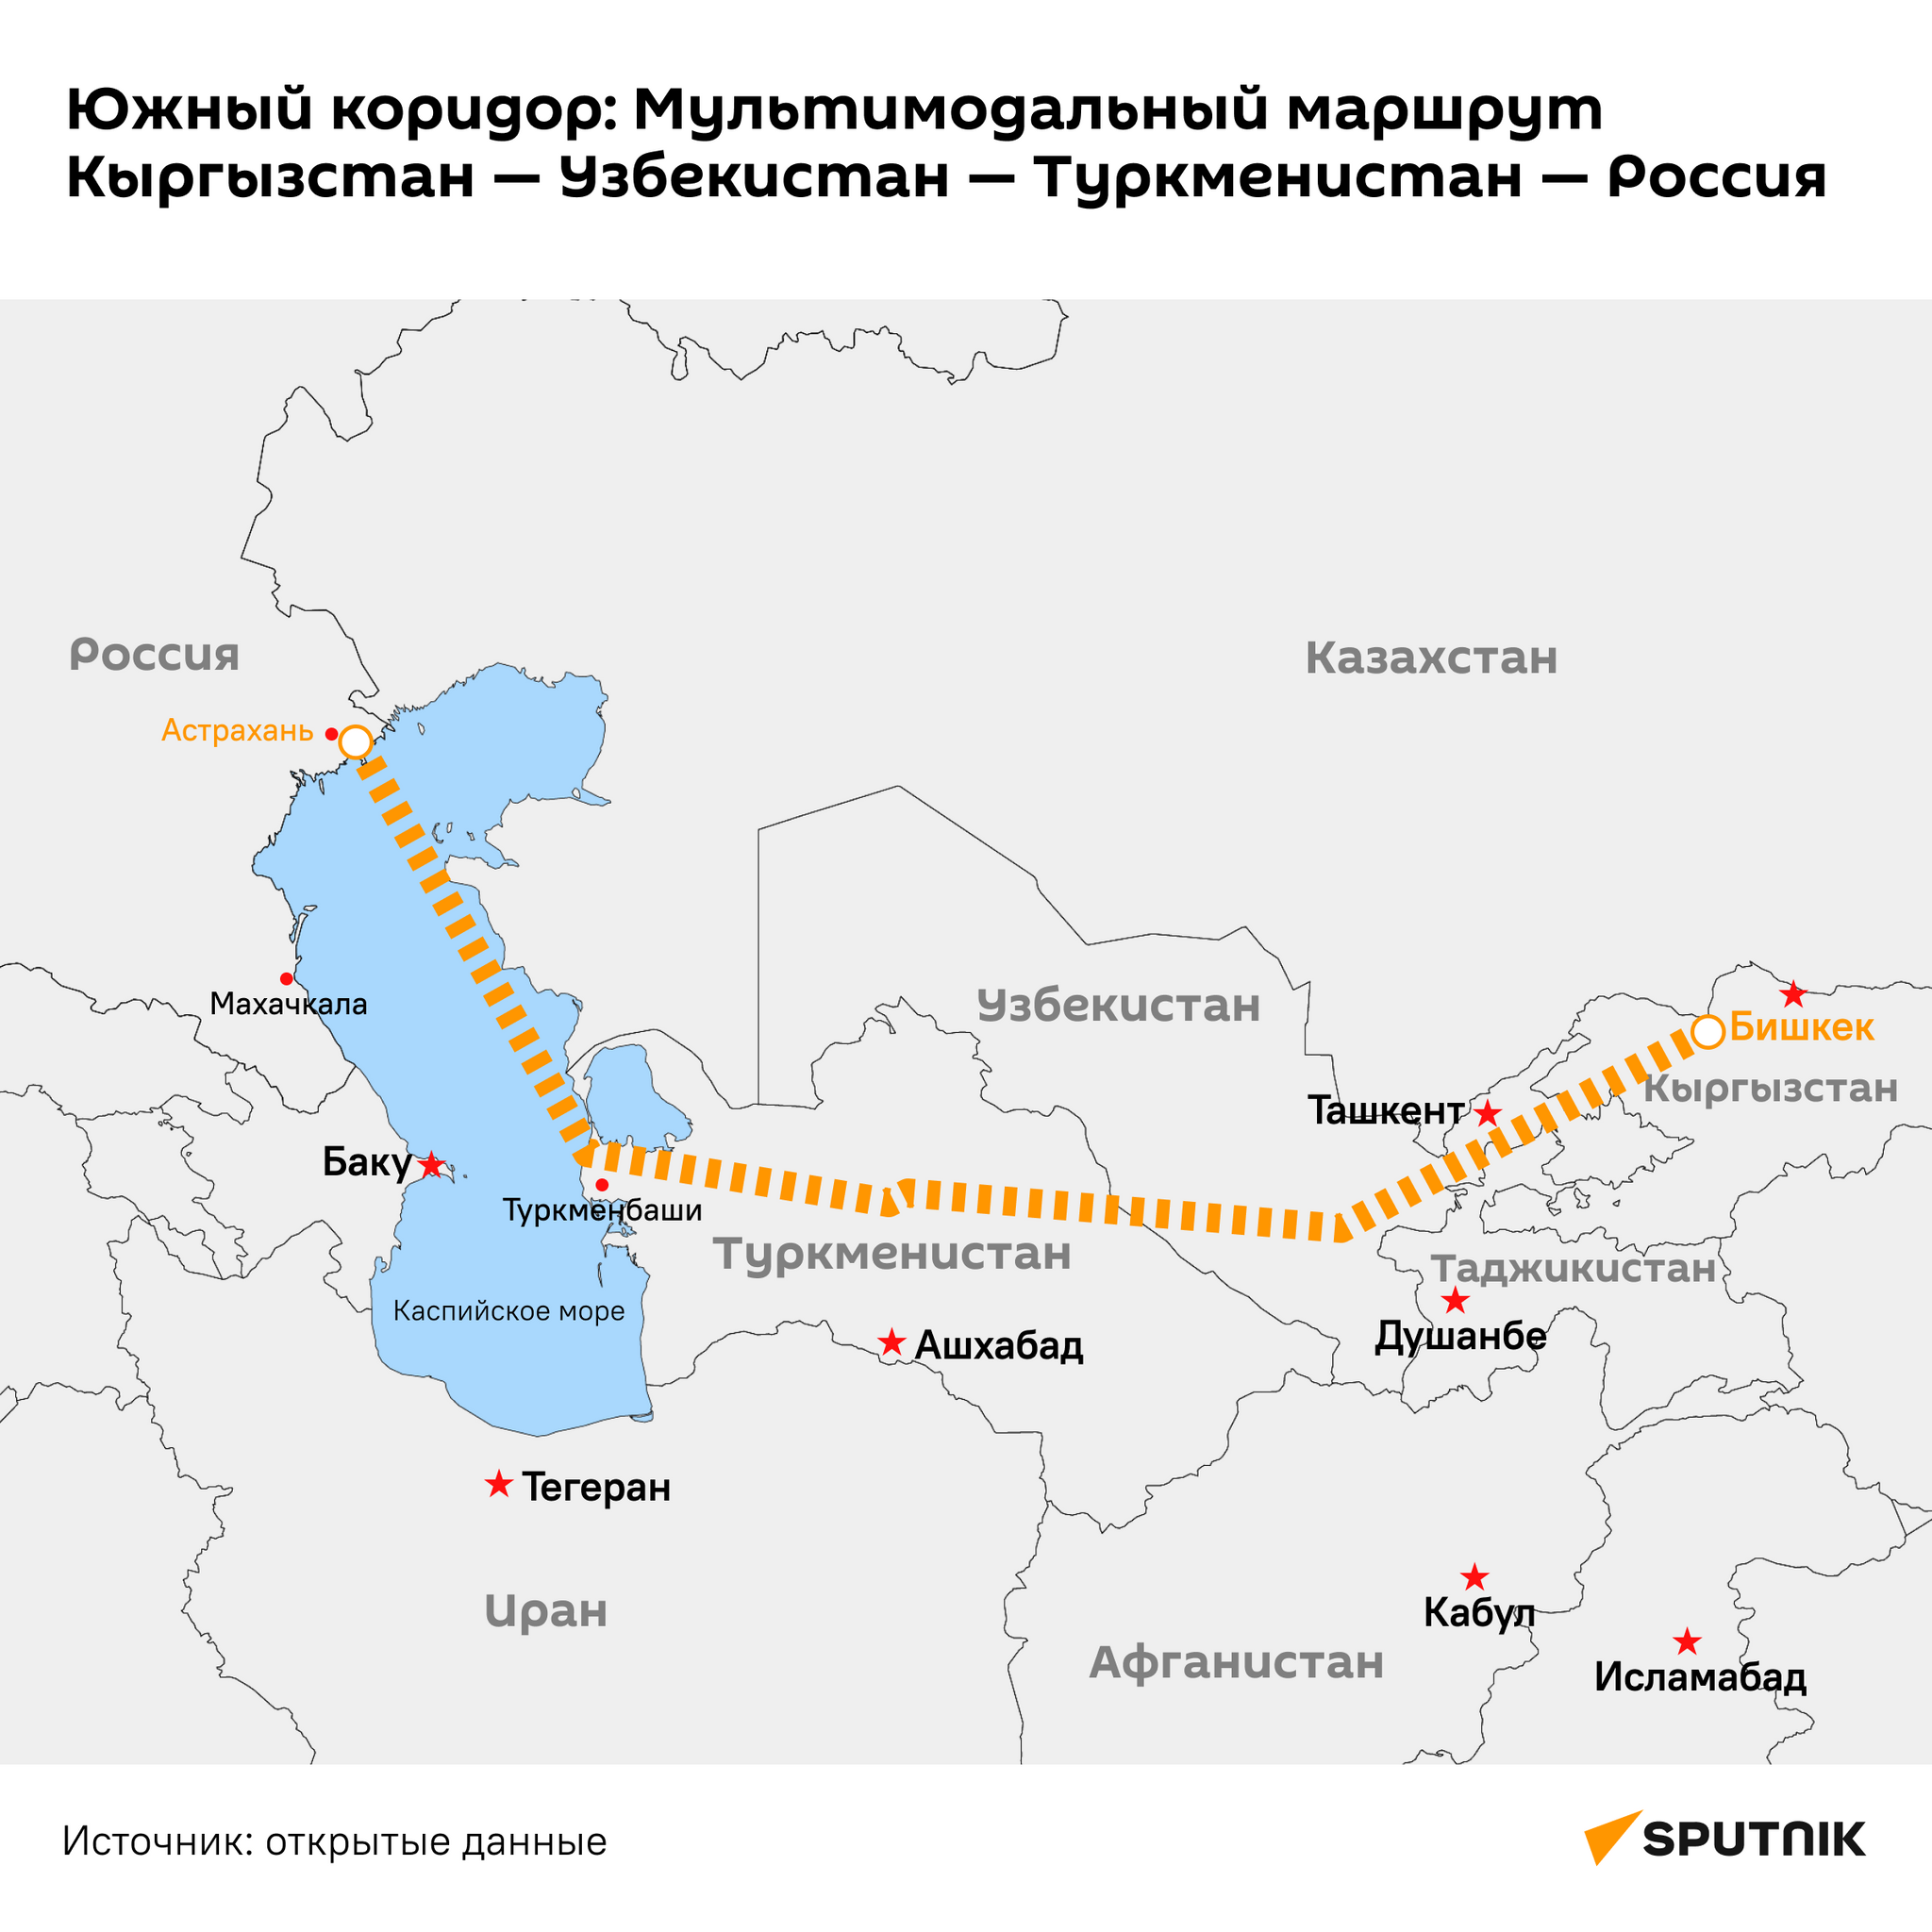 Южный коридор: Мультимодальный маршрут  - Sputnik Узбекистан